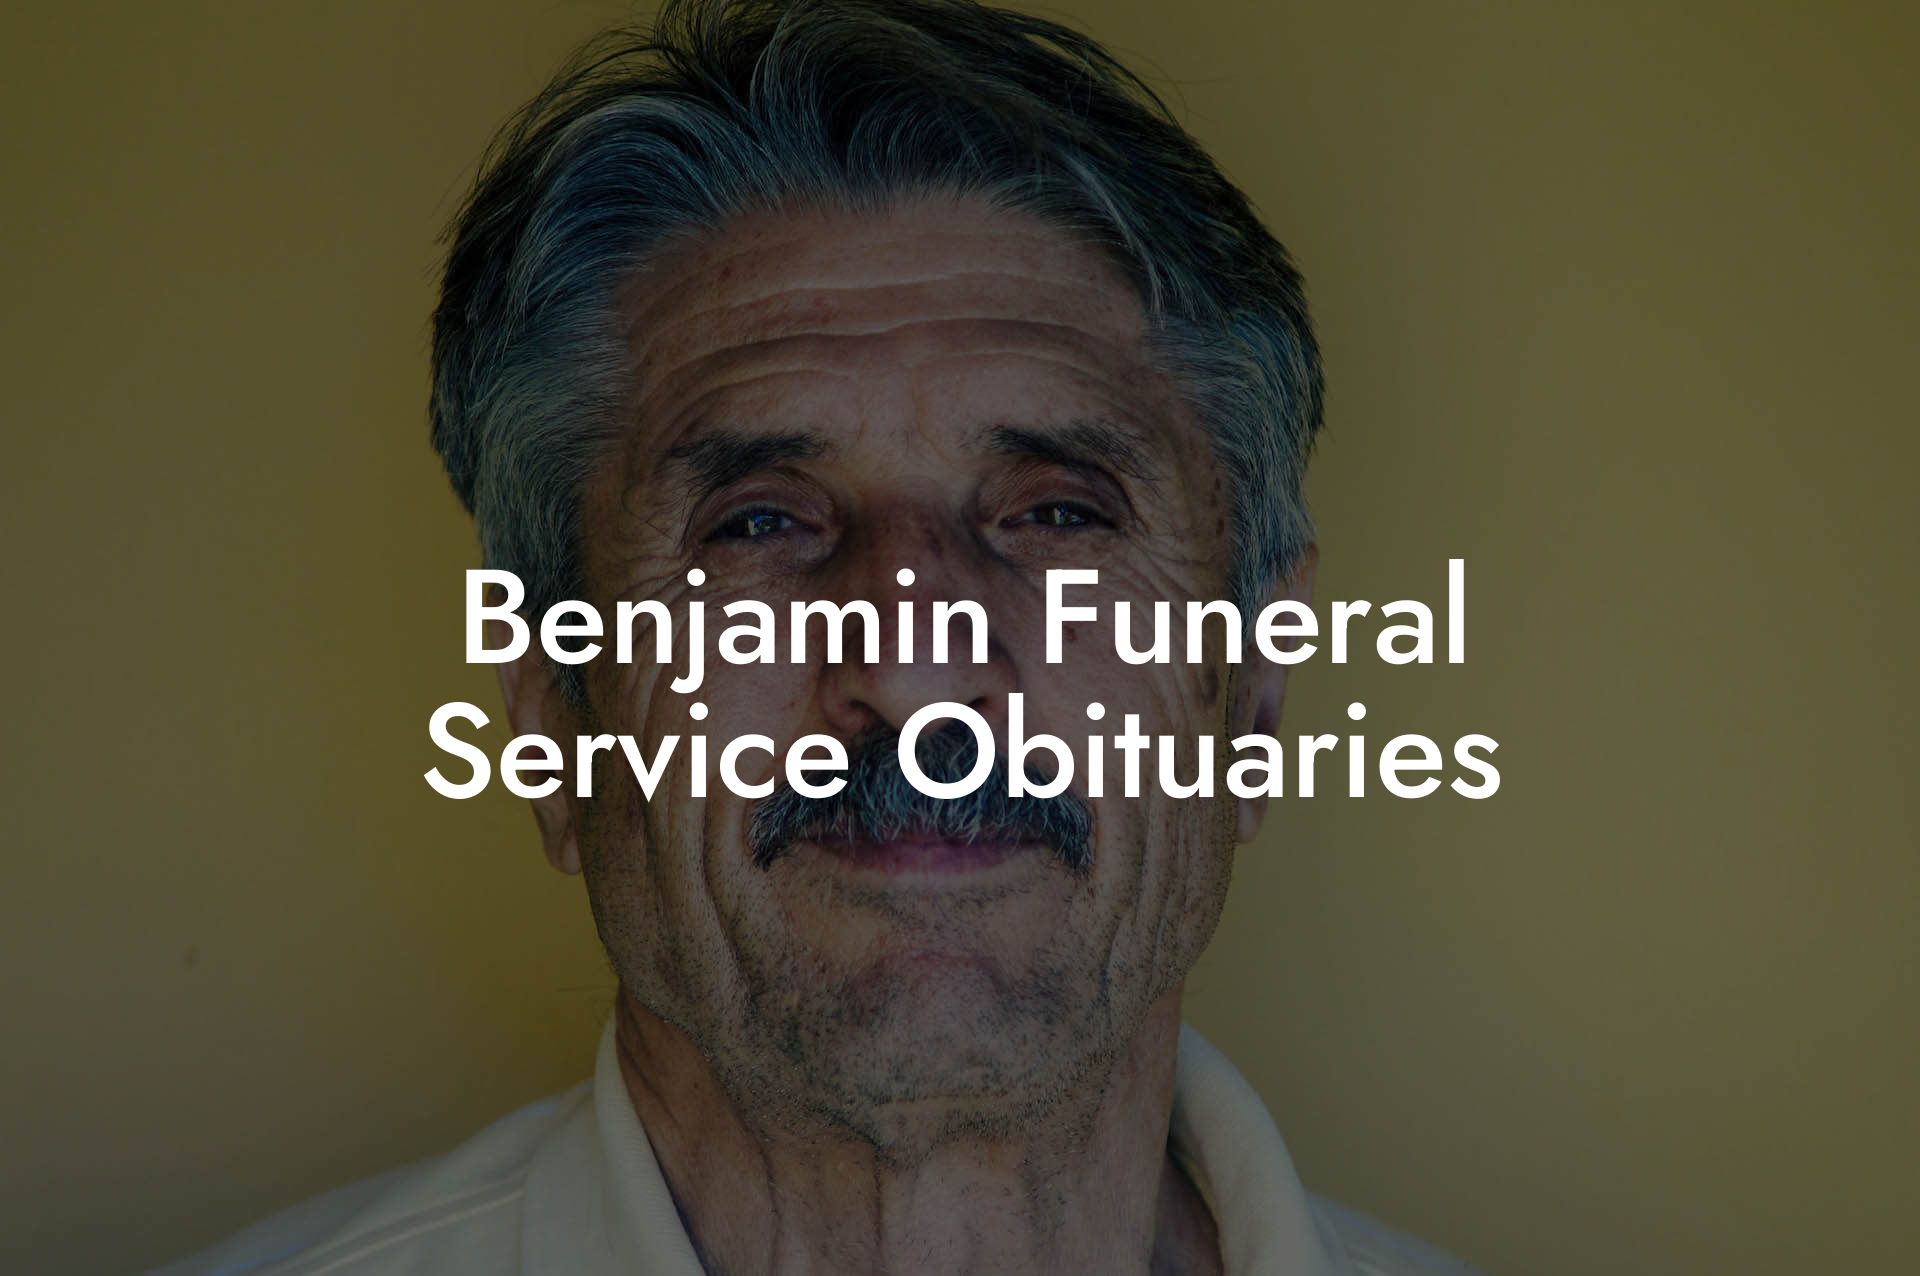 Benjamin Funeral Service Obituaries